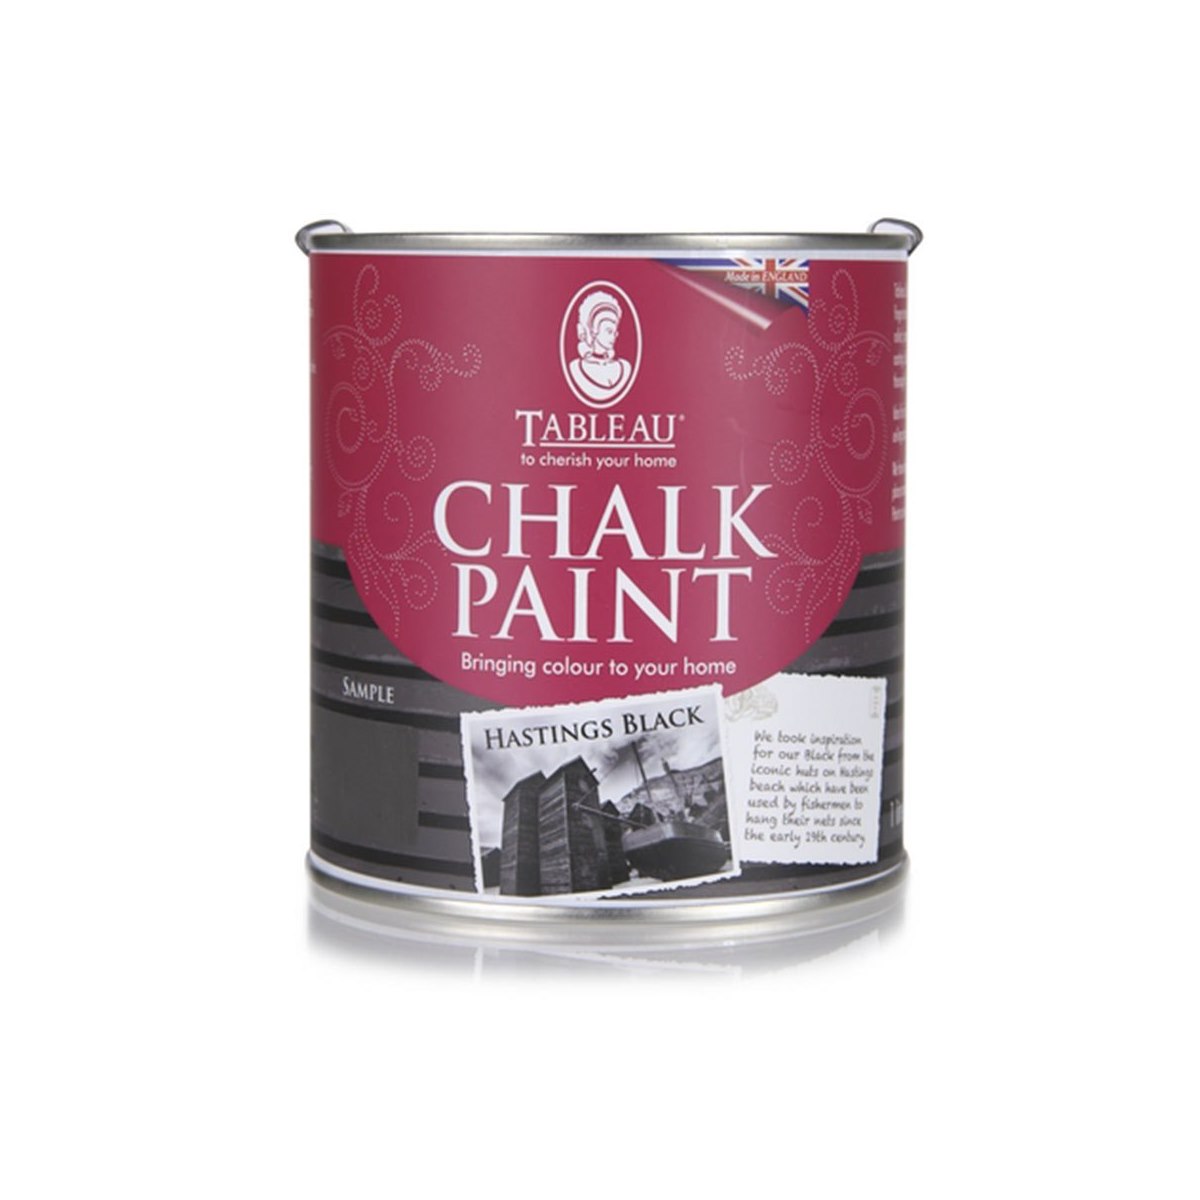 Tableau Chalk Paint Hastings Black 1 Litre